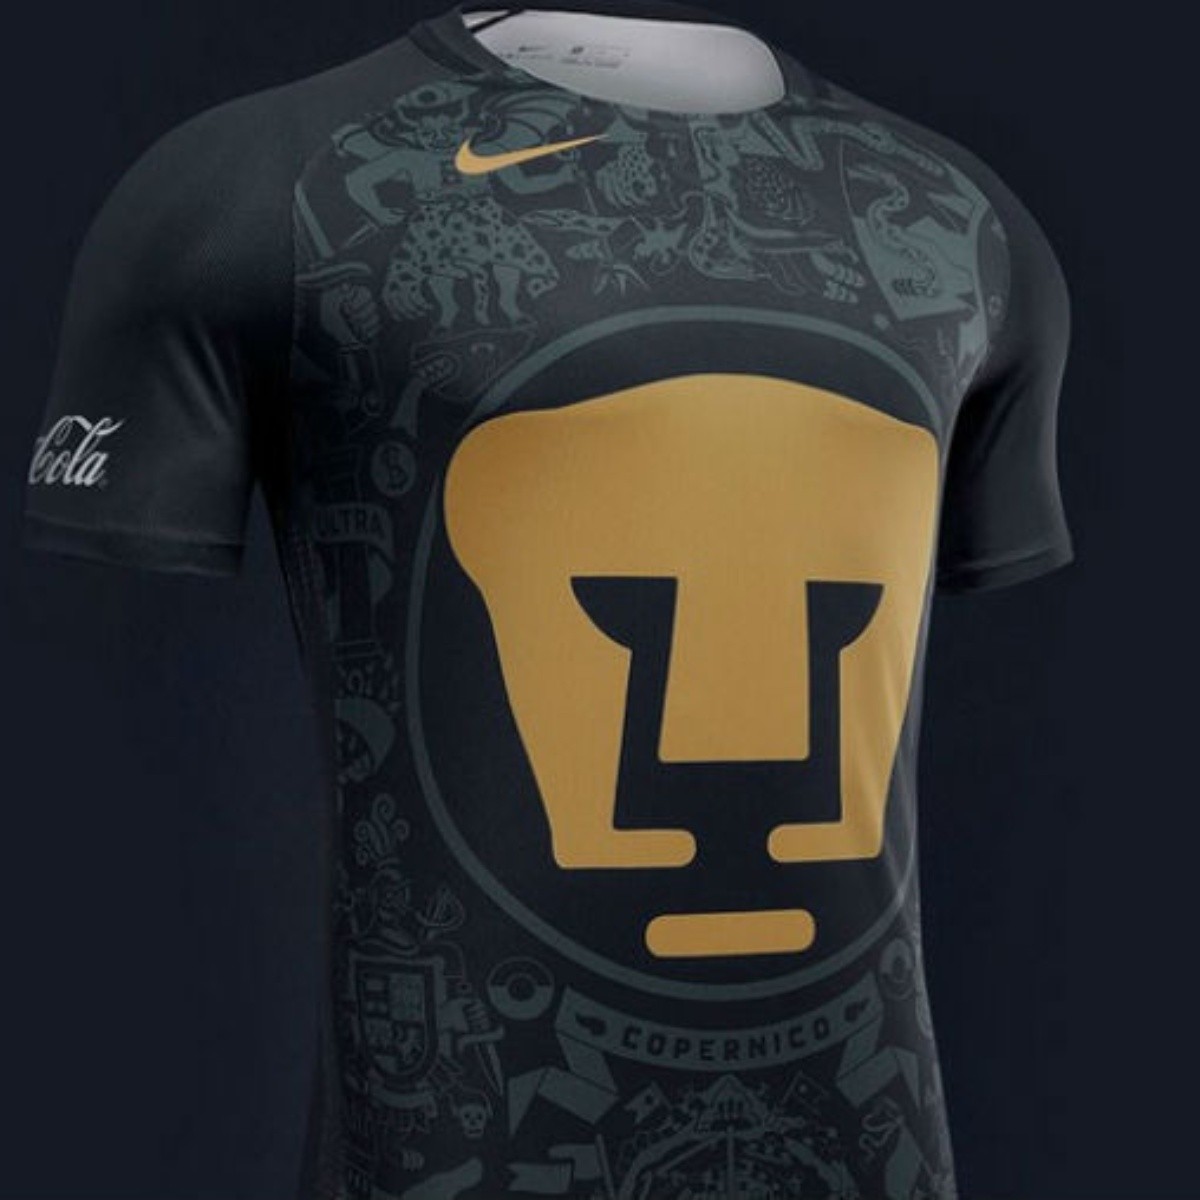 Pumas hace oficial su uniforme el Apertura 2016 | El Informador